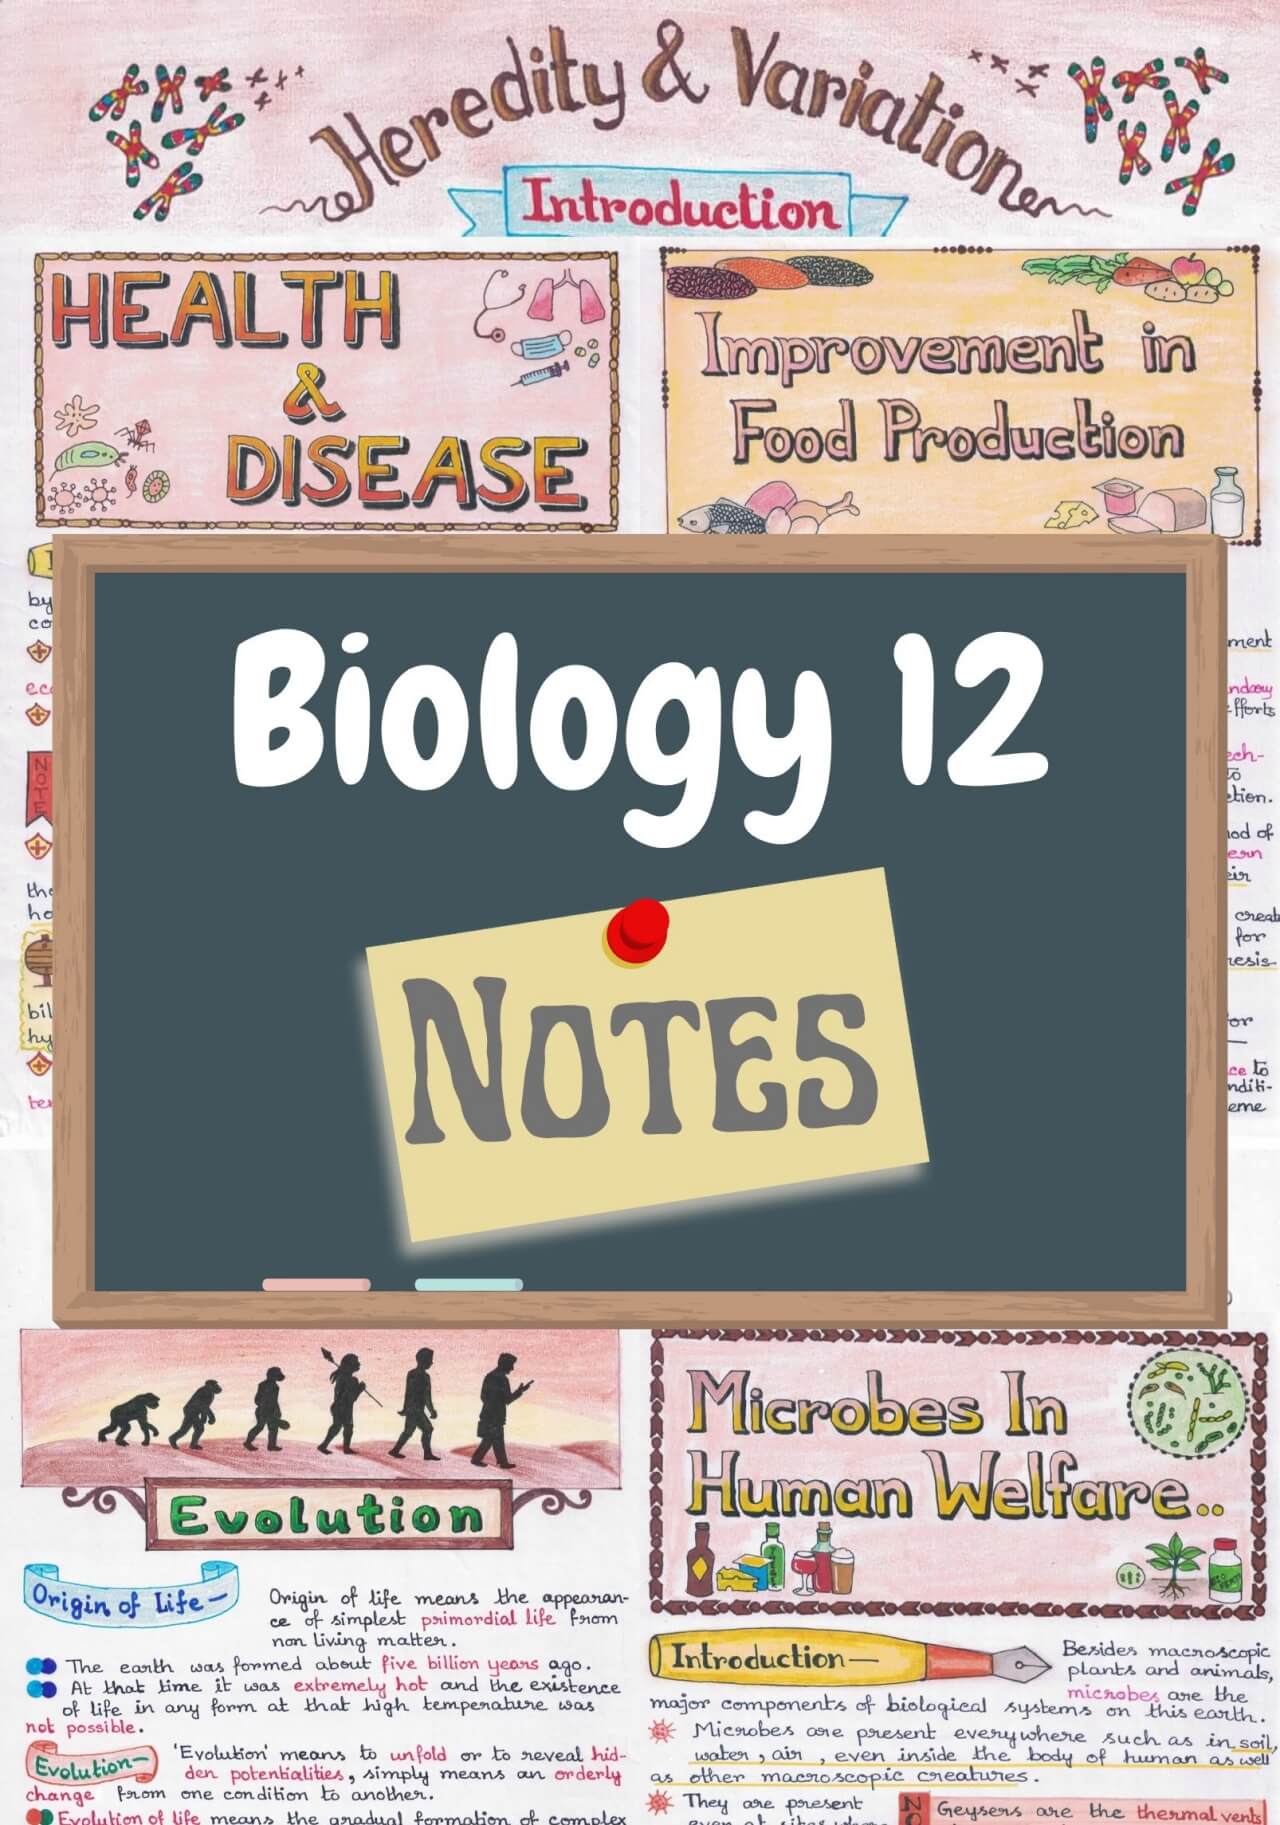 Class 12 Biology (Chapters 1-16) Handwritten Notes PDF - CBSE